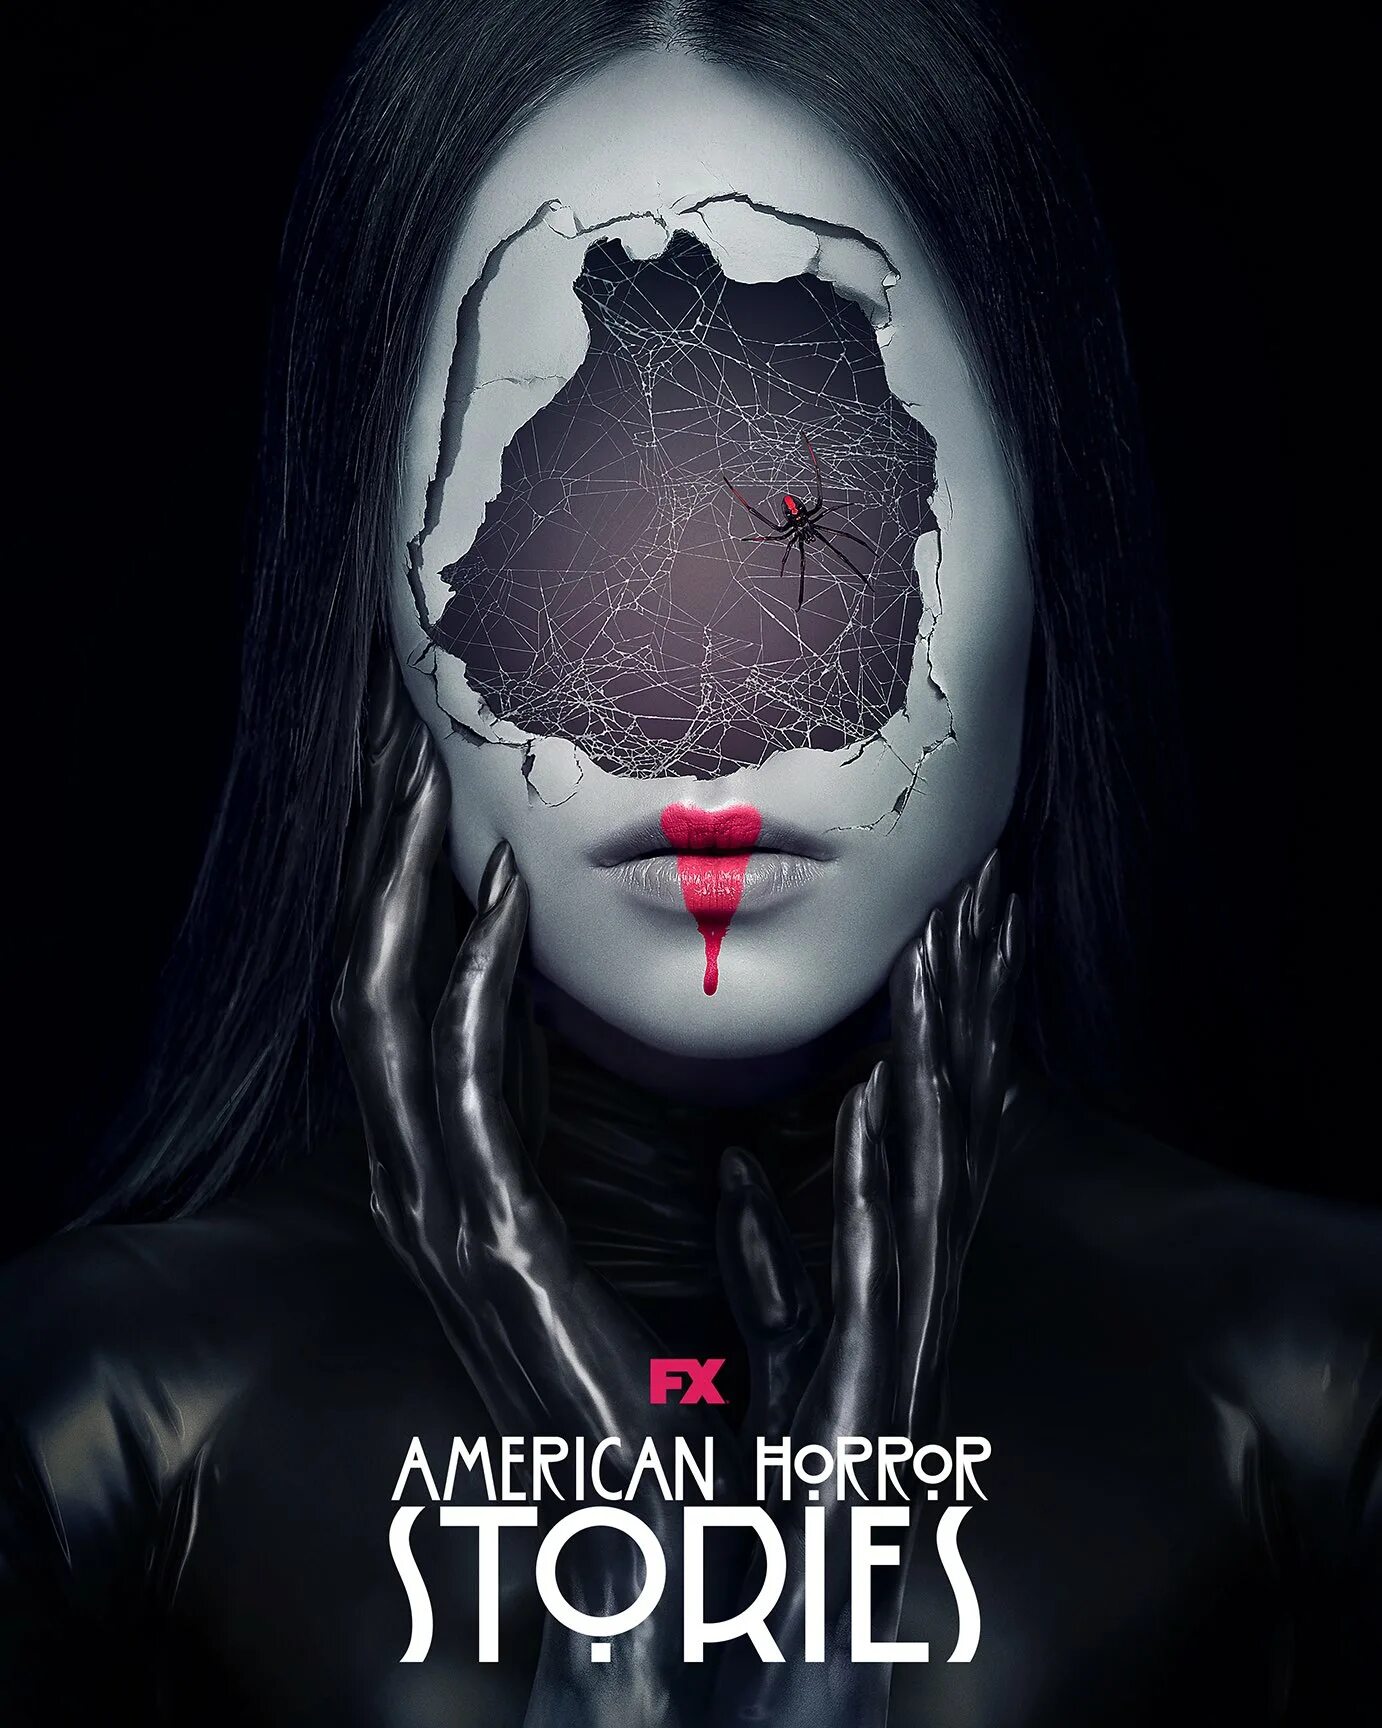 Американские истории ужасов 2021. Американская история ужасов плакат. История английских ужасов